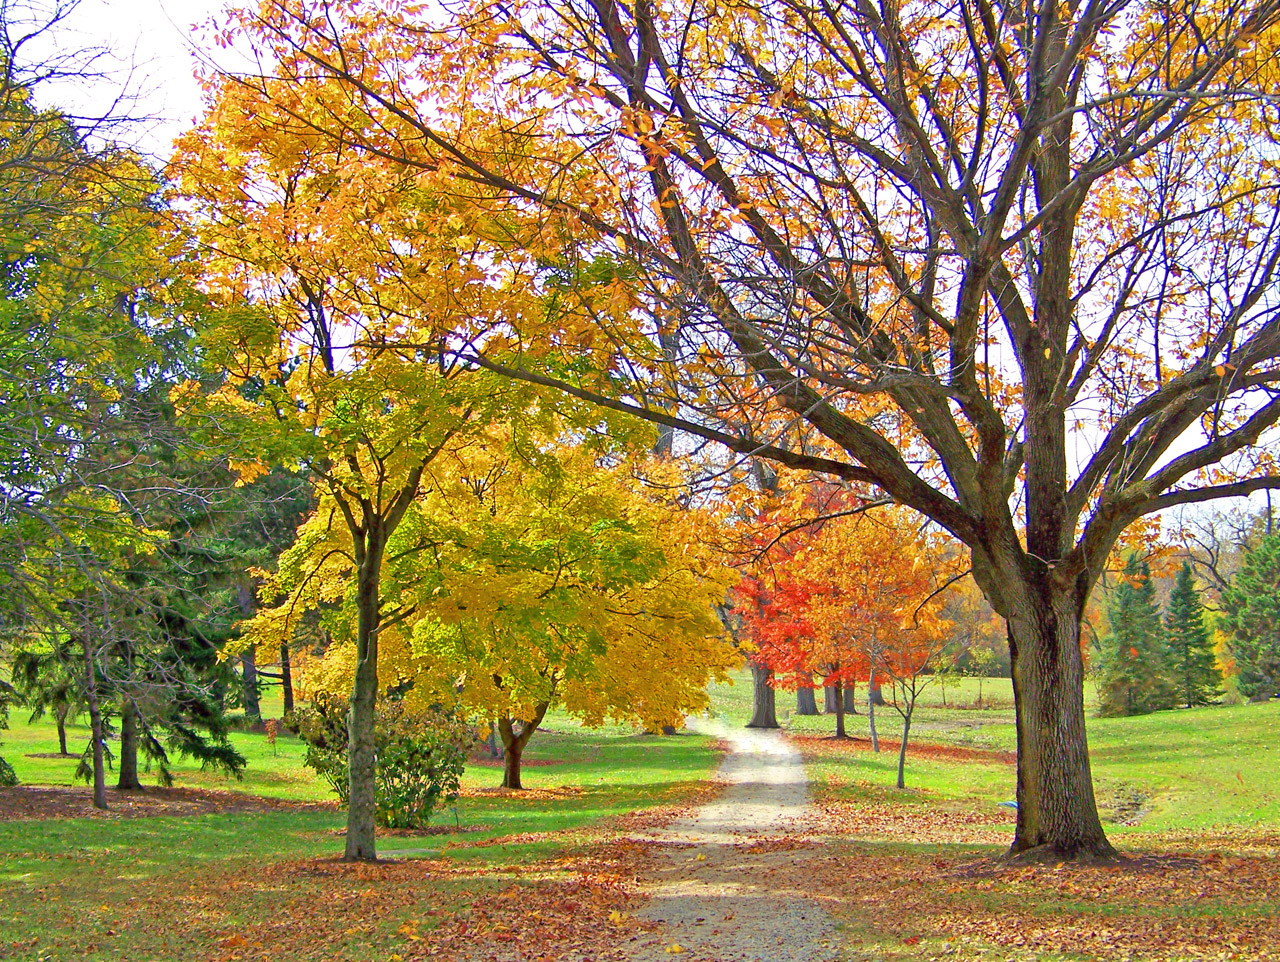 A path through autumn trees